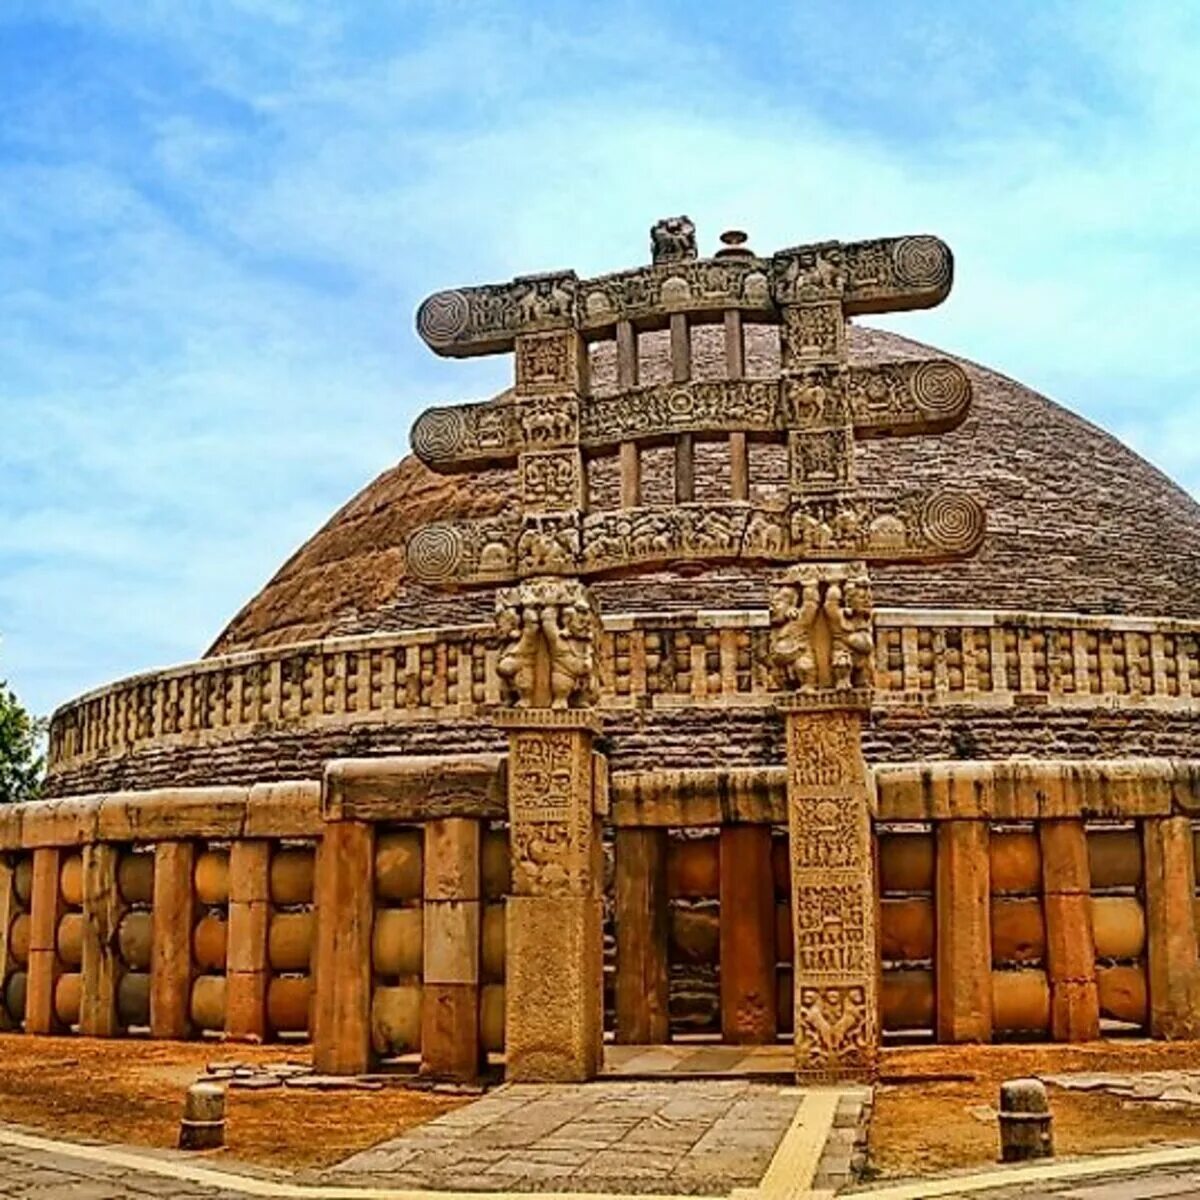 Unesco heritage site. Храм в Санчи. Санчи Индия. Храм 17 в Санчи. Храм Санчи вектор.